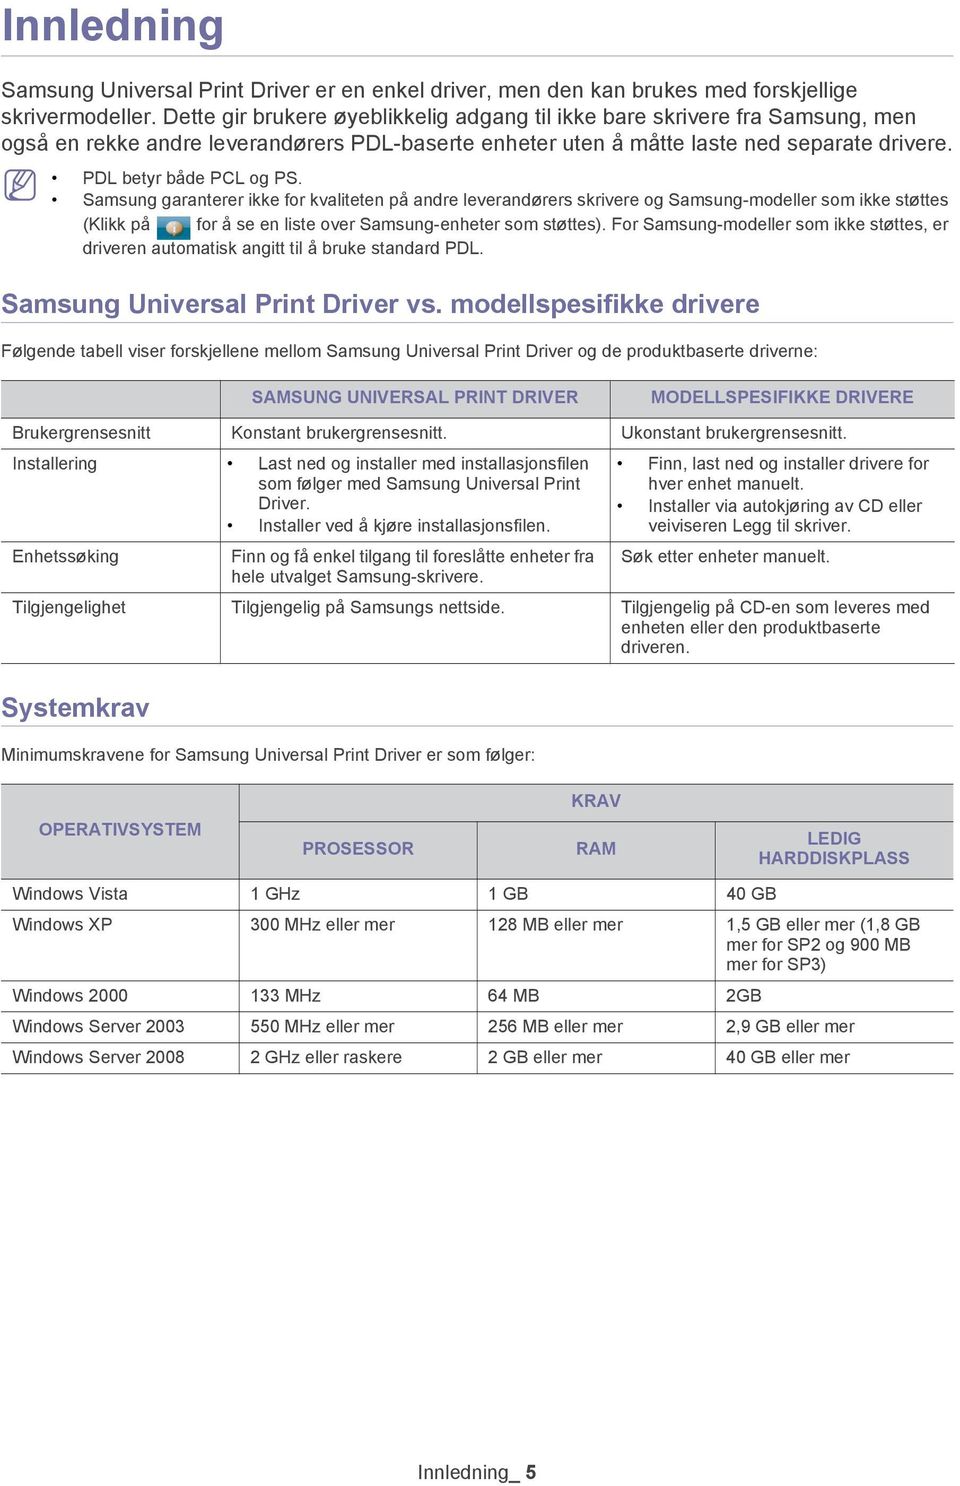 Samsung garanterer ikke for kvaliteten på andre leverandørers skrivere og Samsung-modeller som ikke støttes (Klikk på for å se en liste over Samsung-enheter som støttes).